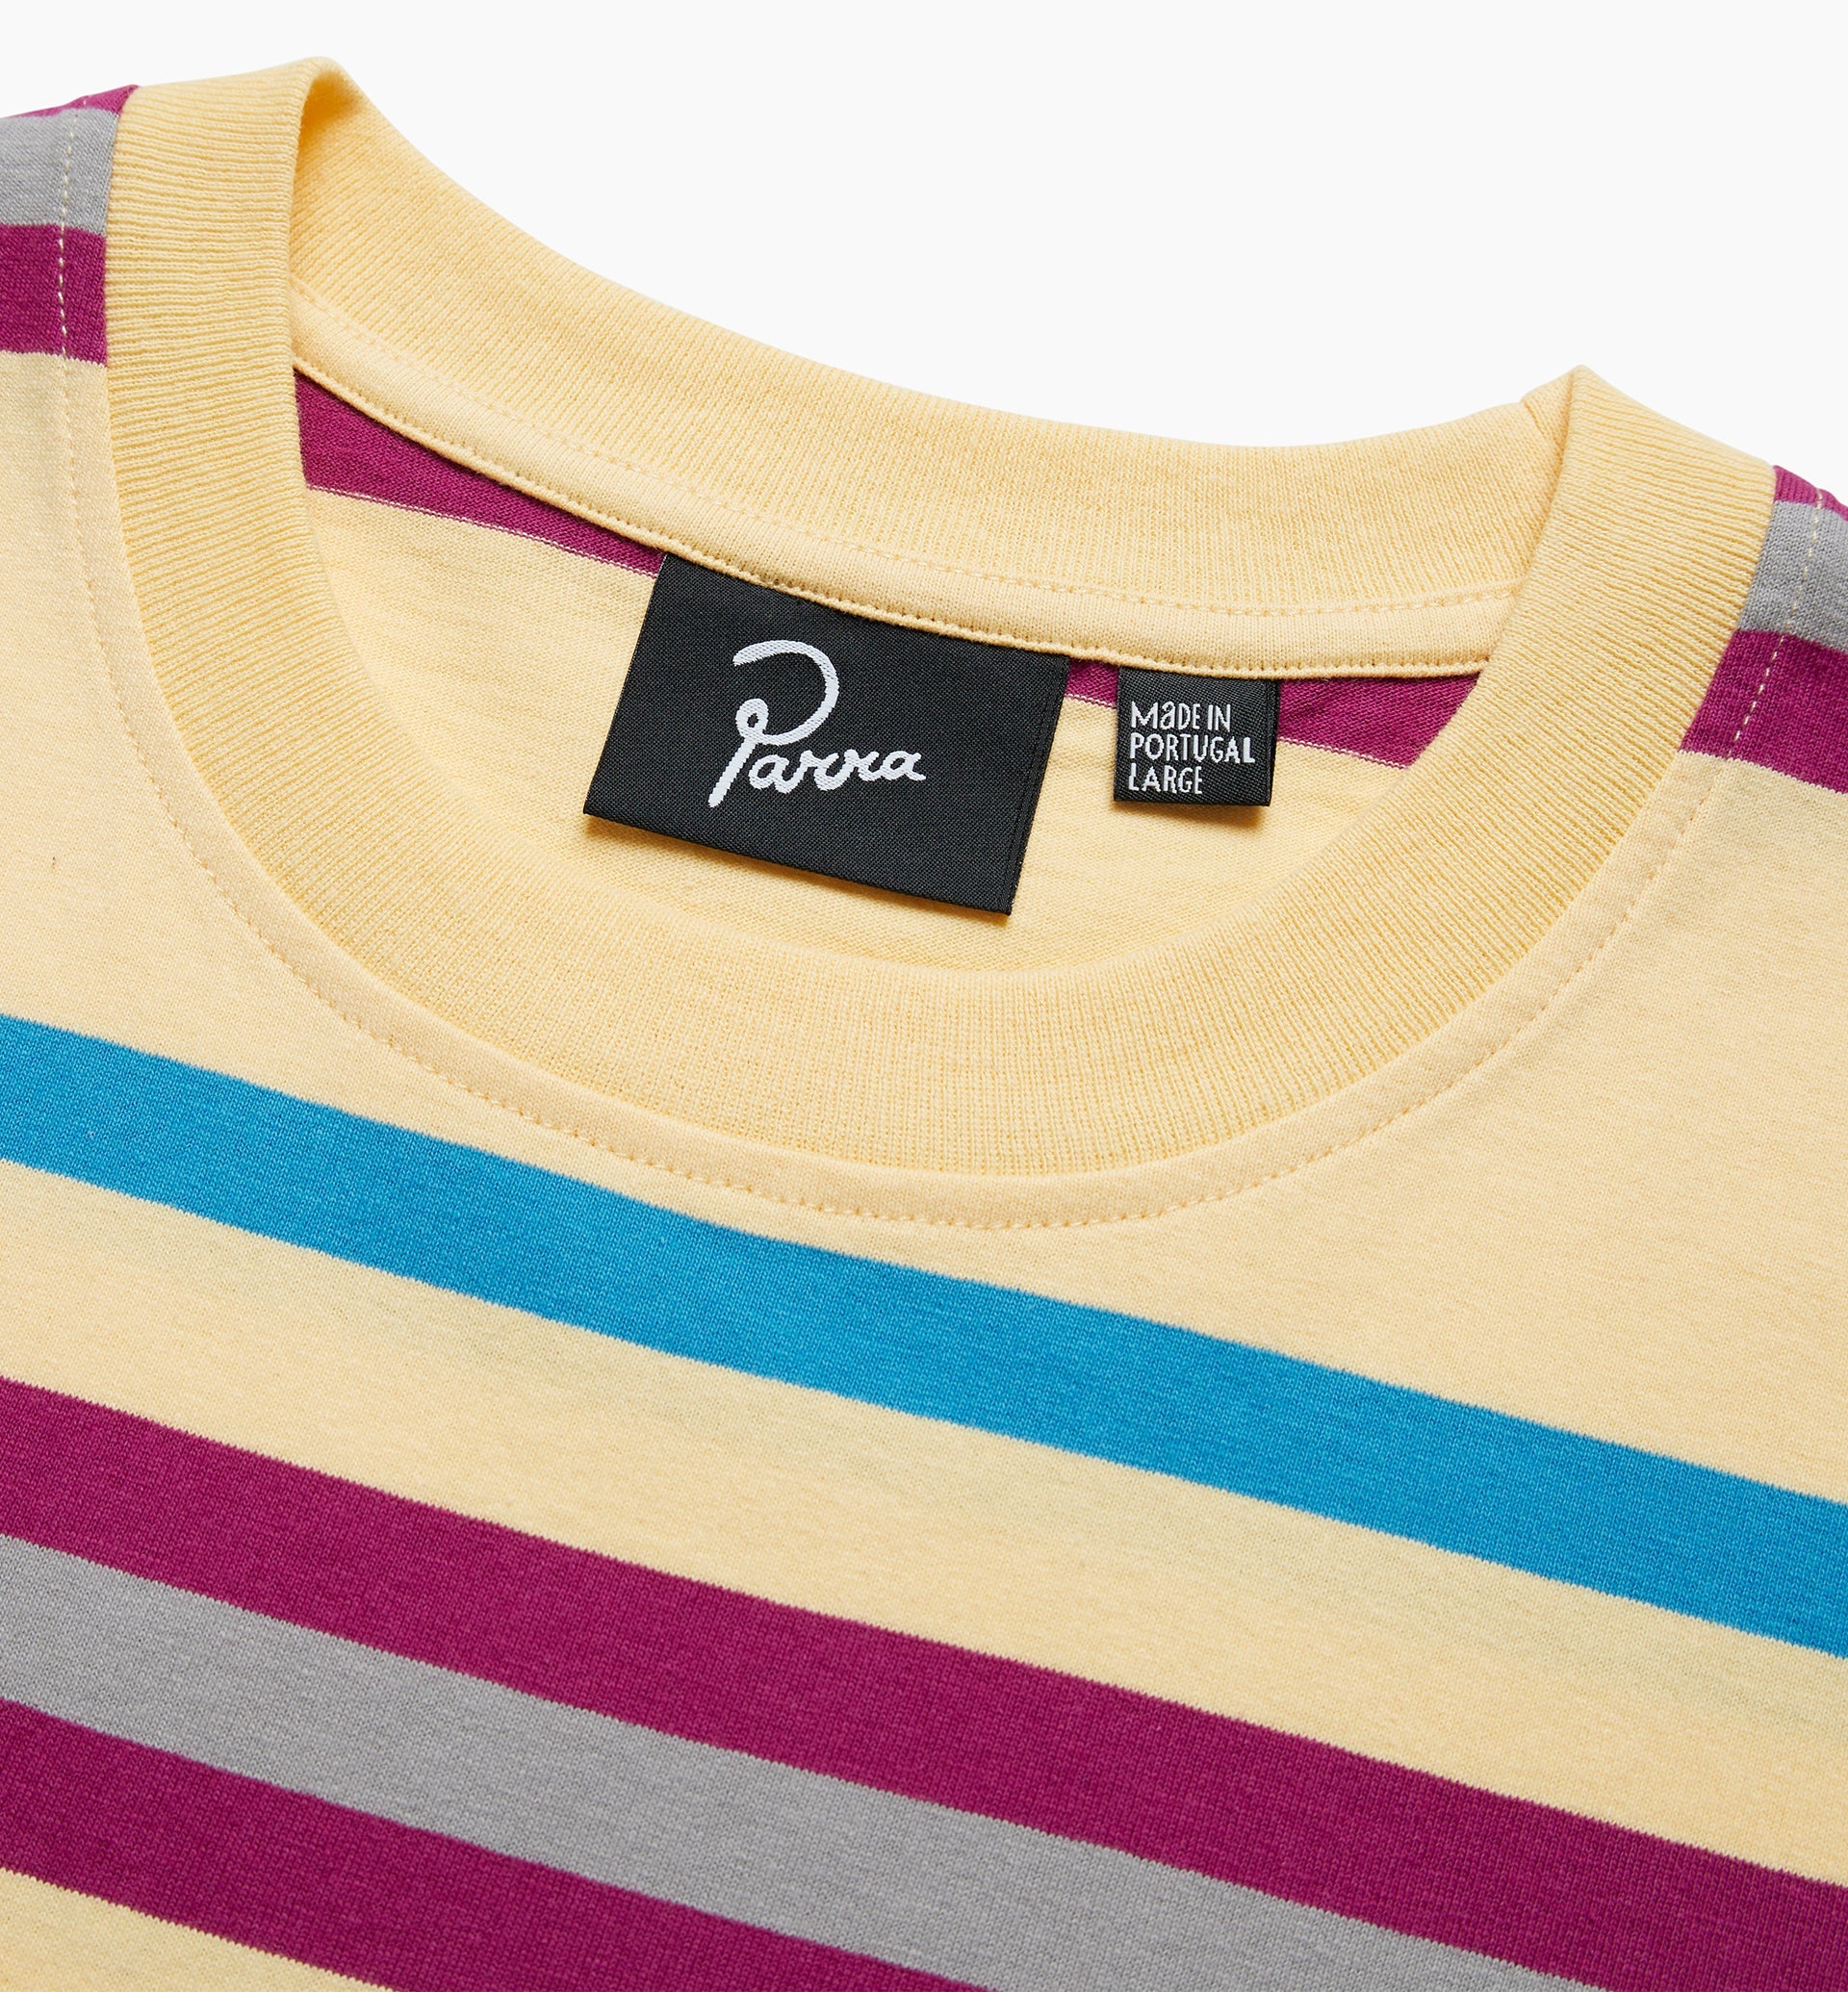 Parra - stripeys t-shirt